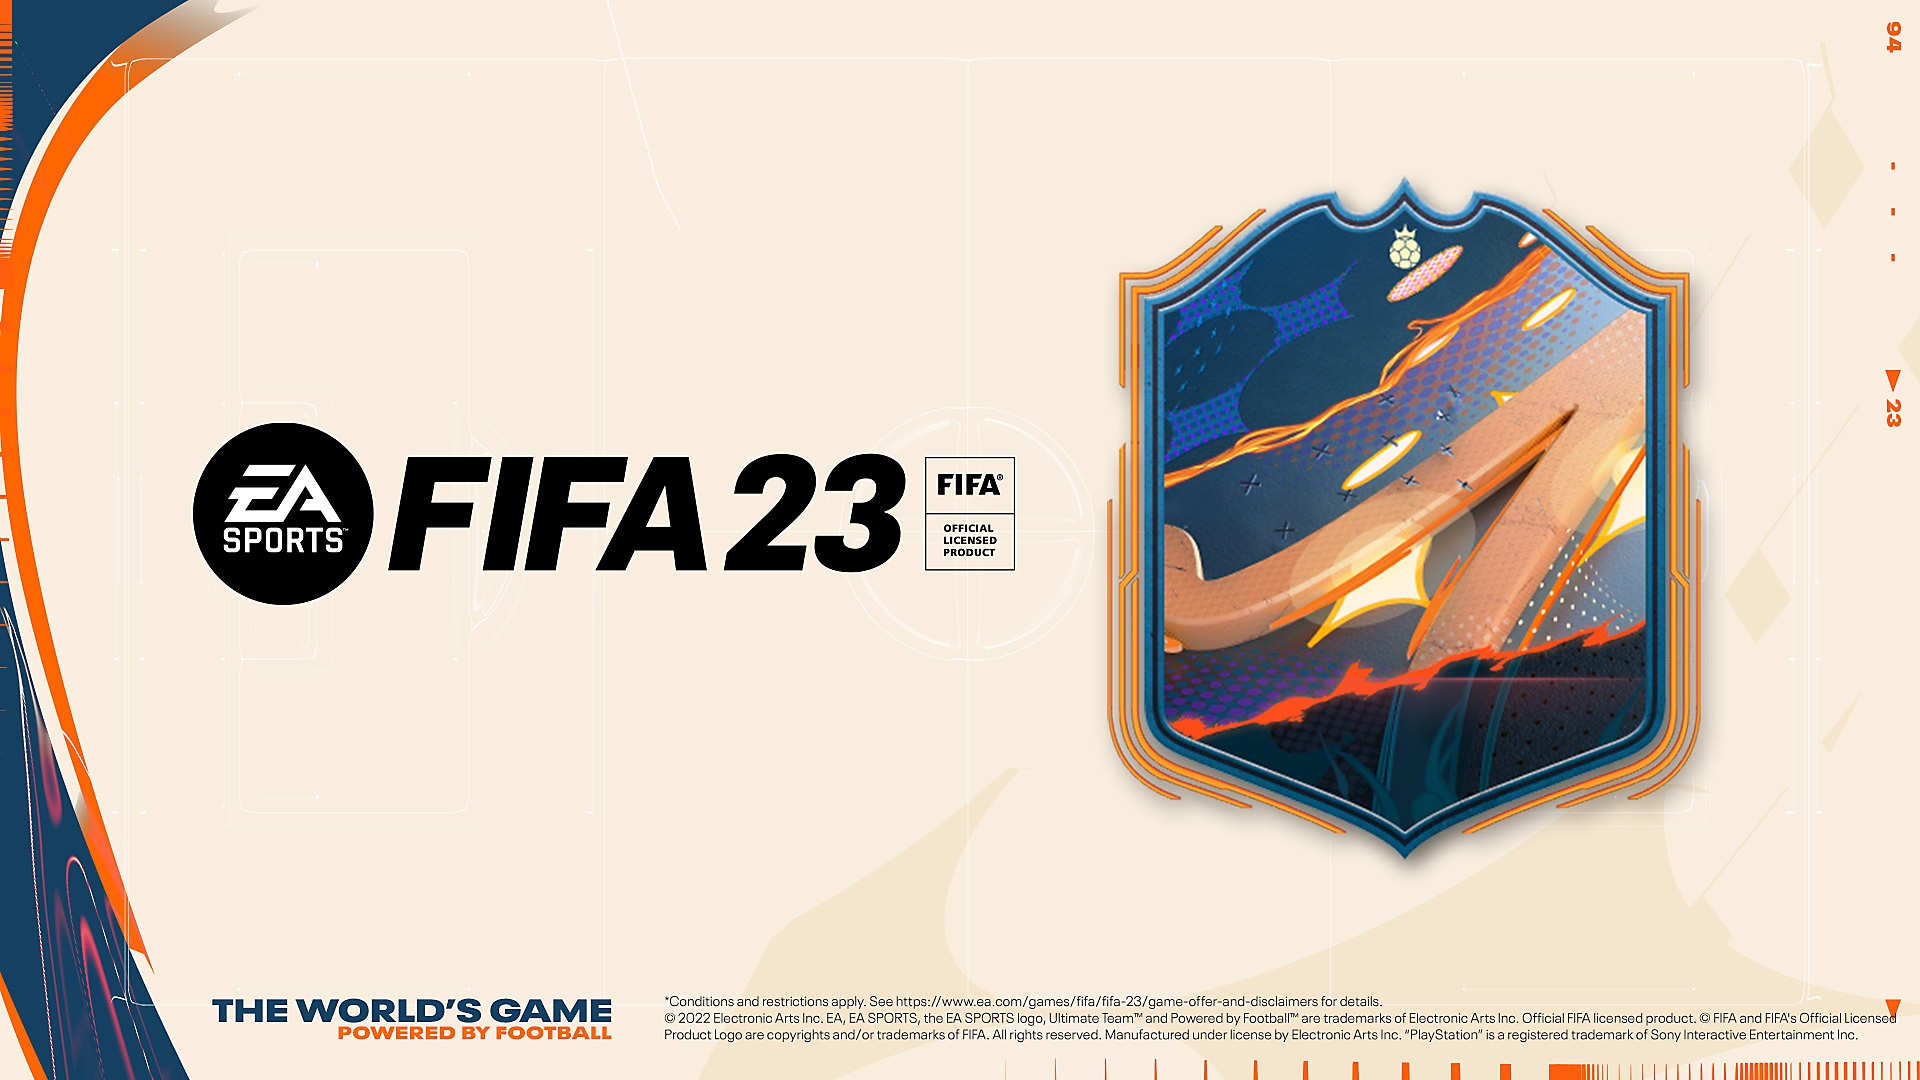 Grafika predobjednávky hry EA Sports FIFA 23 zobrazujúca viacfarebný erb a logo FIFA 23